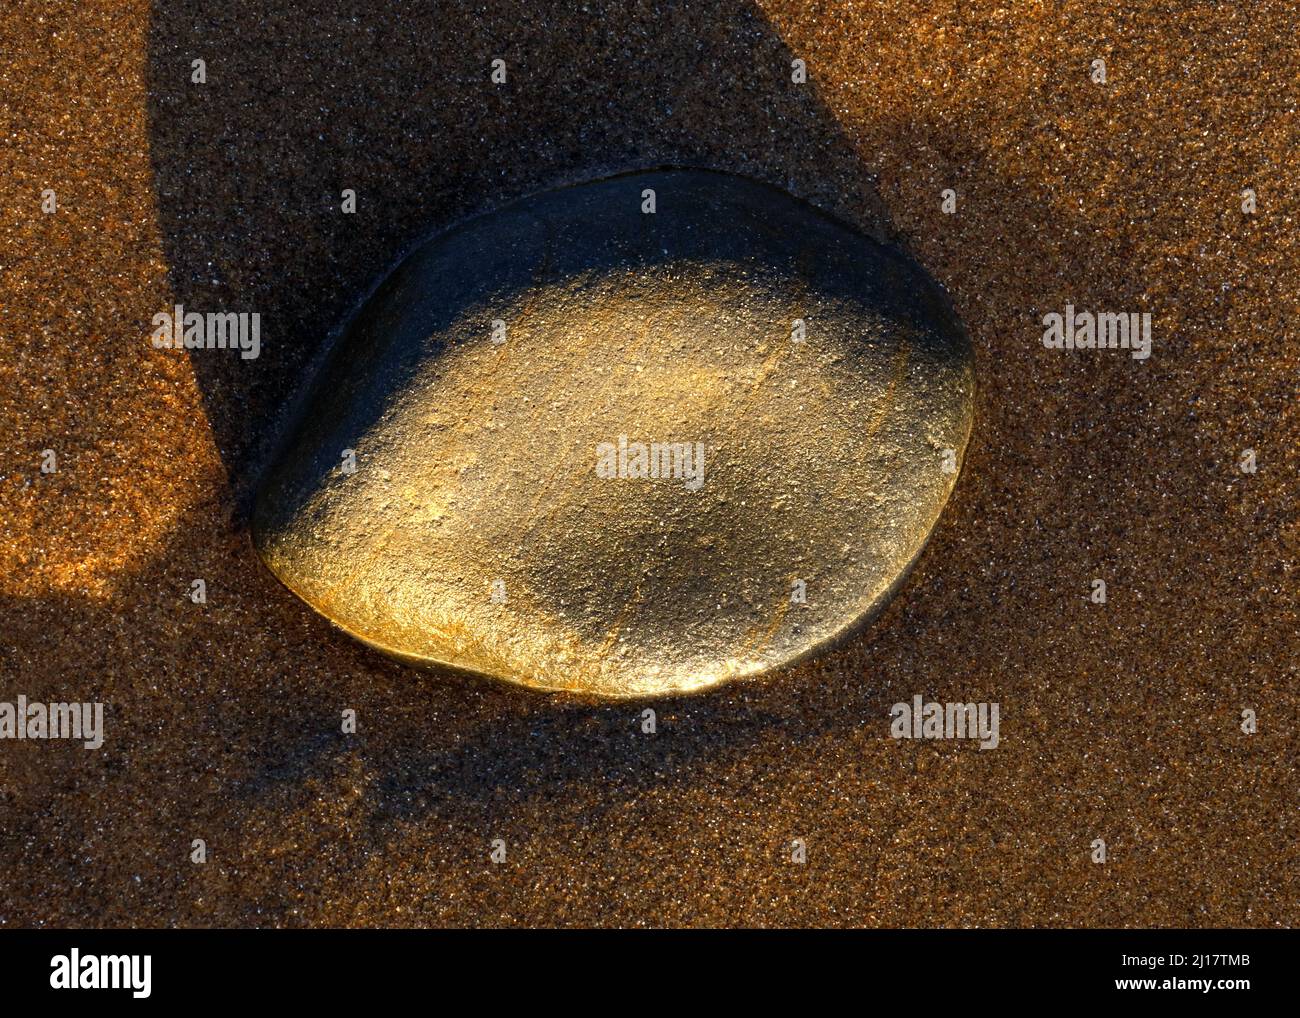 Foto a colori di pietre costiere sulla spiaggia levigata e arrotondata dai passaggi del tempo e marea contenente ciottoli di pietra con patte granuloso Foto Stock